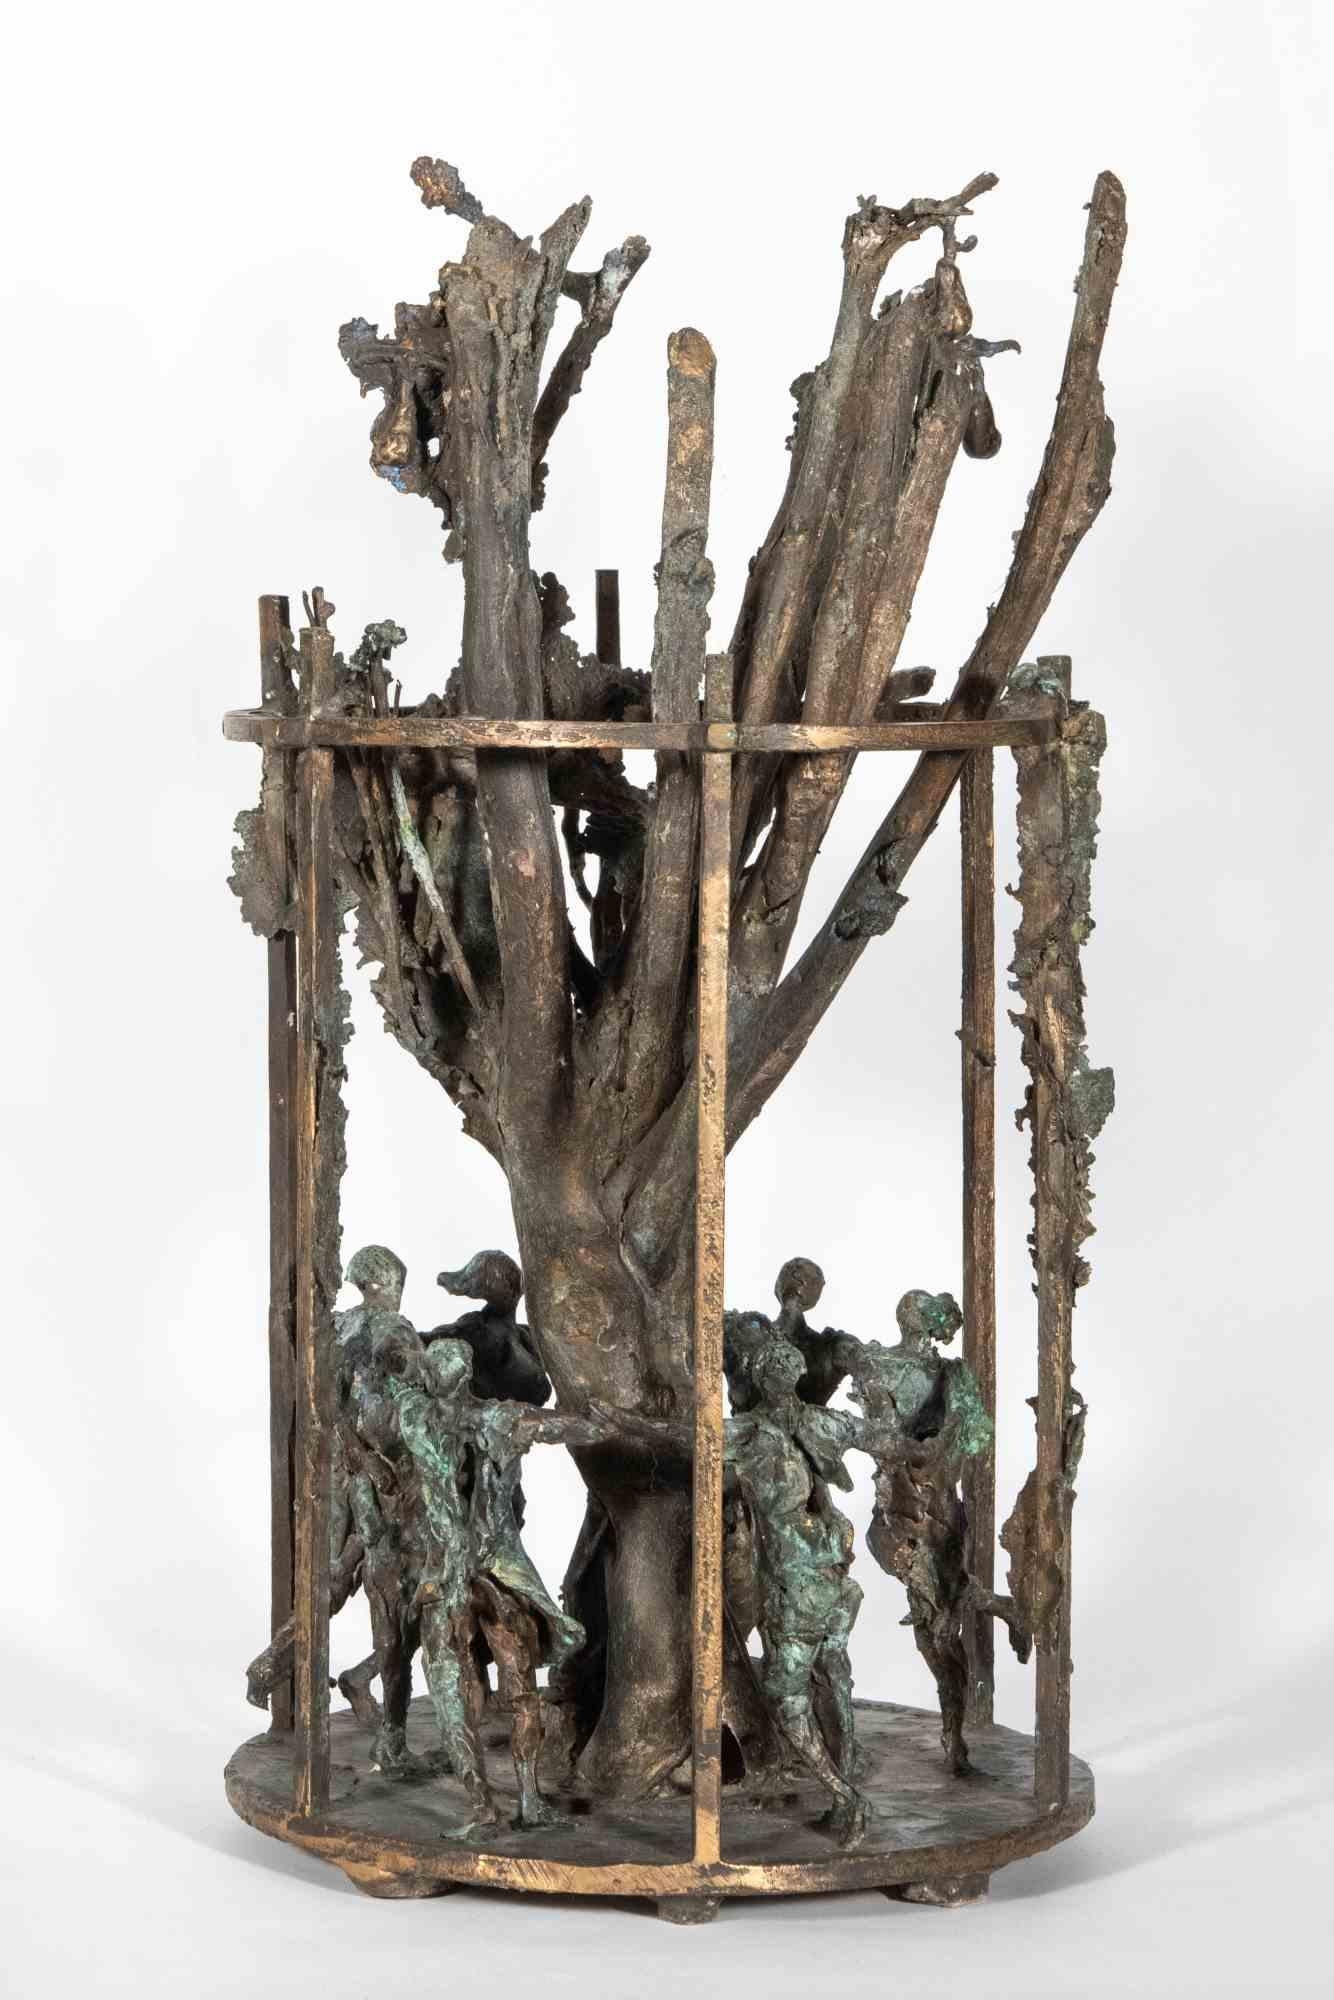 Introspektive Skulptur, in ausgezeichnetem Zustand, authentische 1994 Schöpfung in Bronze vorgeschlagen von Bildhauer Lorenzo Servalli, um über die Choralität der Gemeinschaft, in dem Bemühen, sich zu entwickeln und zu verbessern ein wenig jeden